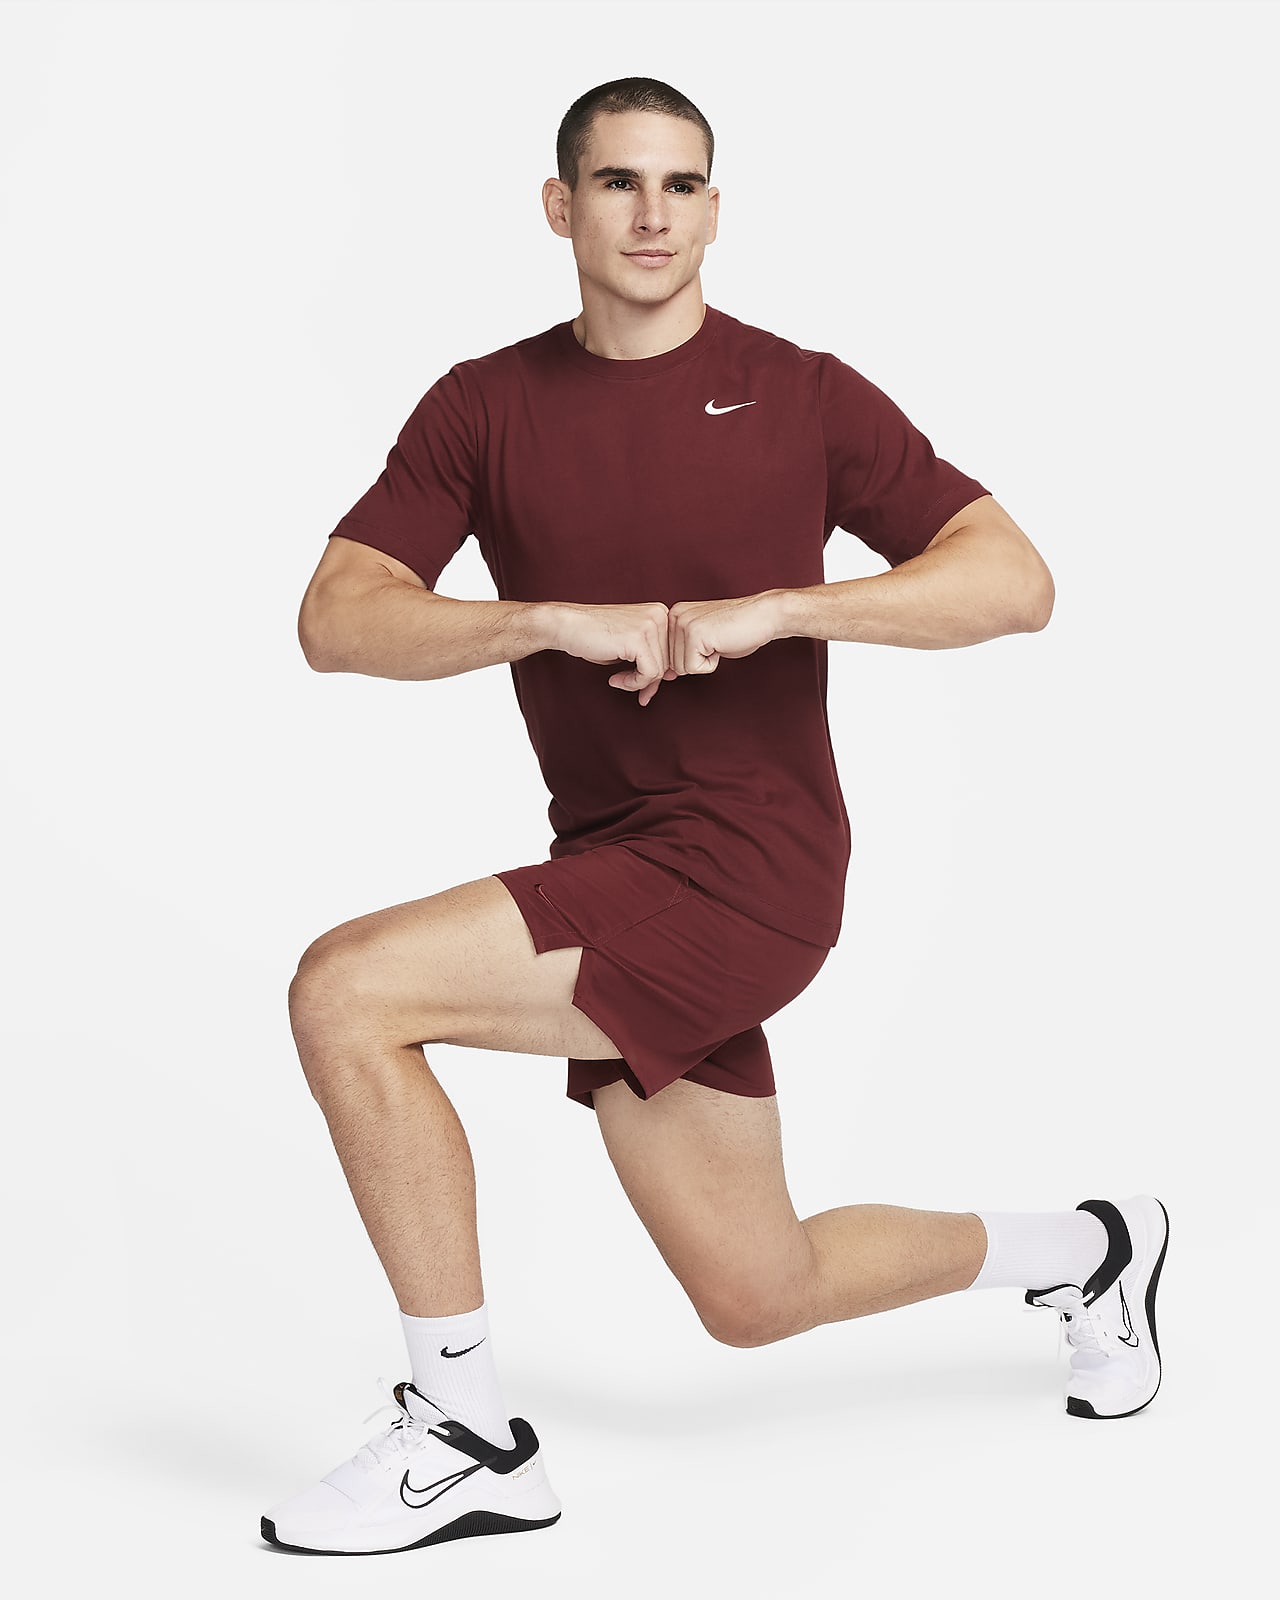 Débardeur Nike Dri-FIT - Débardeurs - Homme - Fitness